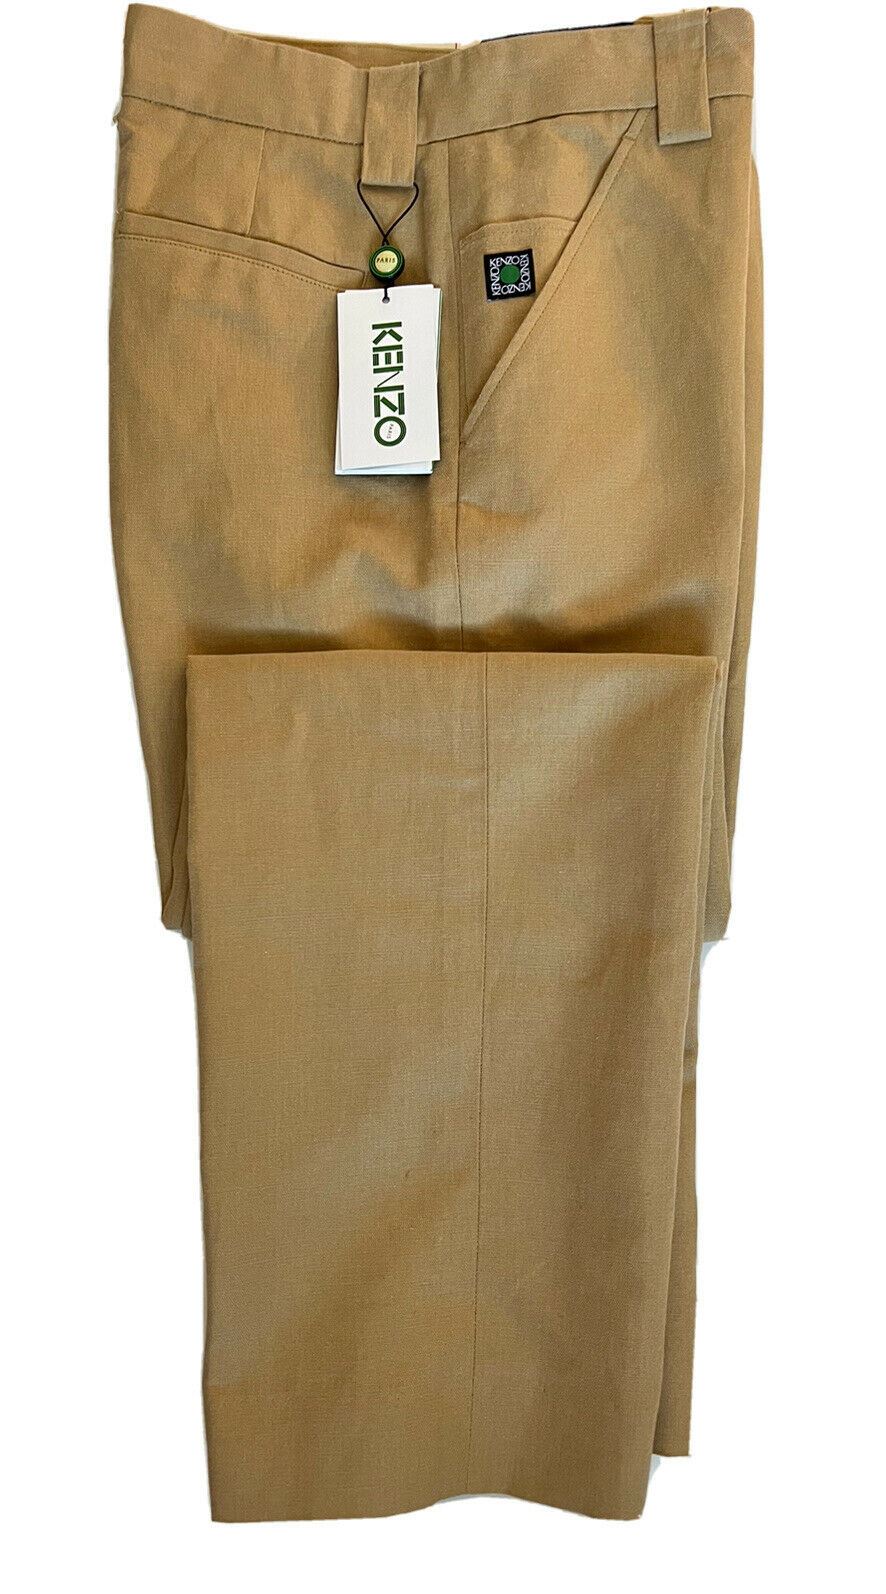 Мужские темно-бежевые повседневные льняные брюки Kenzo, размер 32, США, 325 долларов США (48 евро)